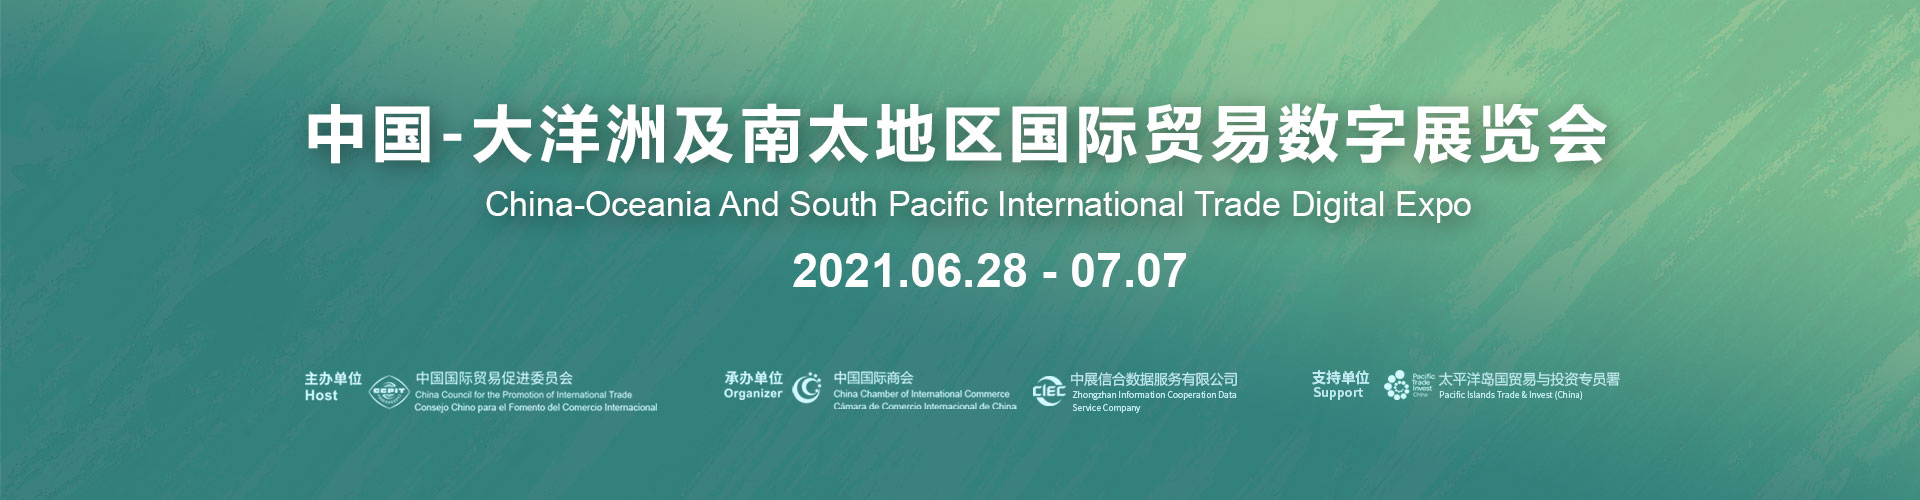 中国—大洋洲及南太地区国际贸易数字展览会